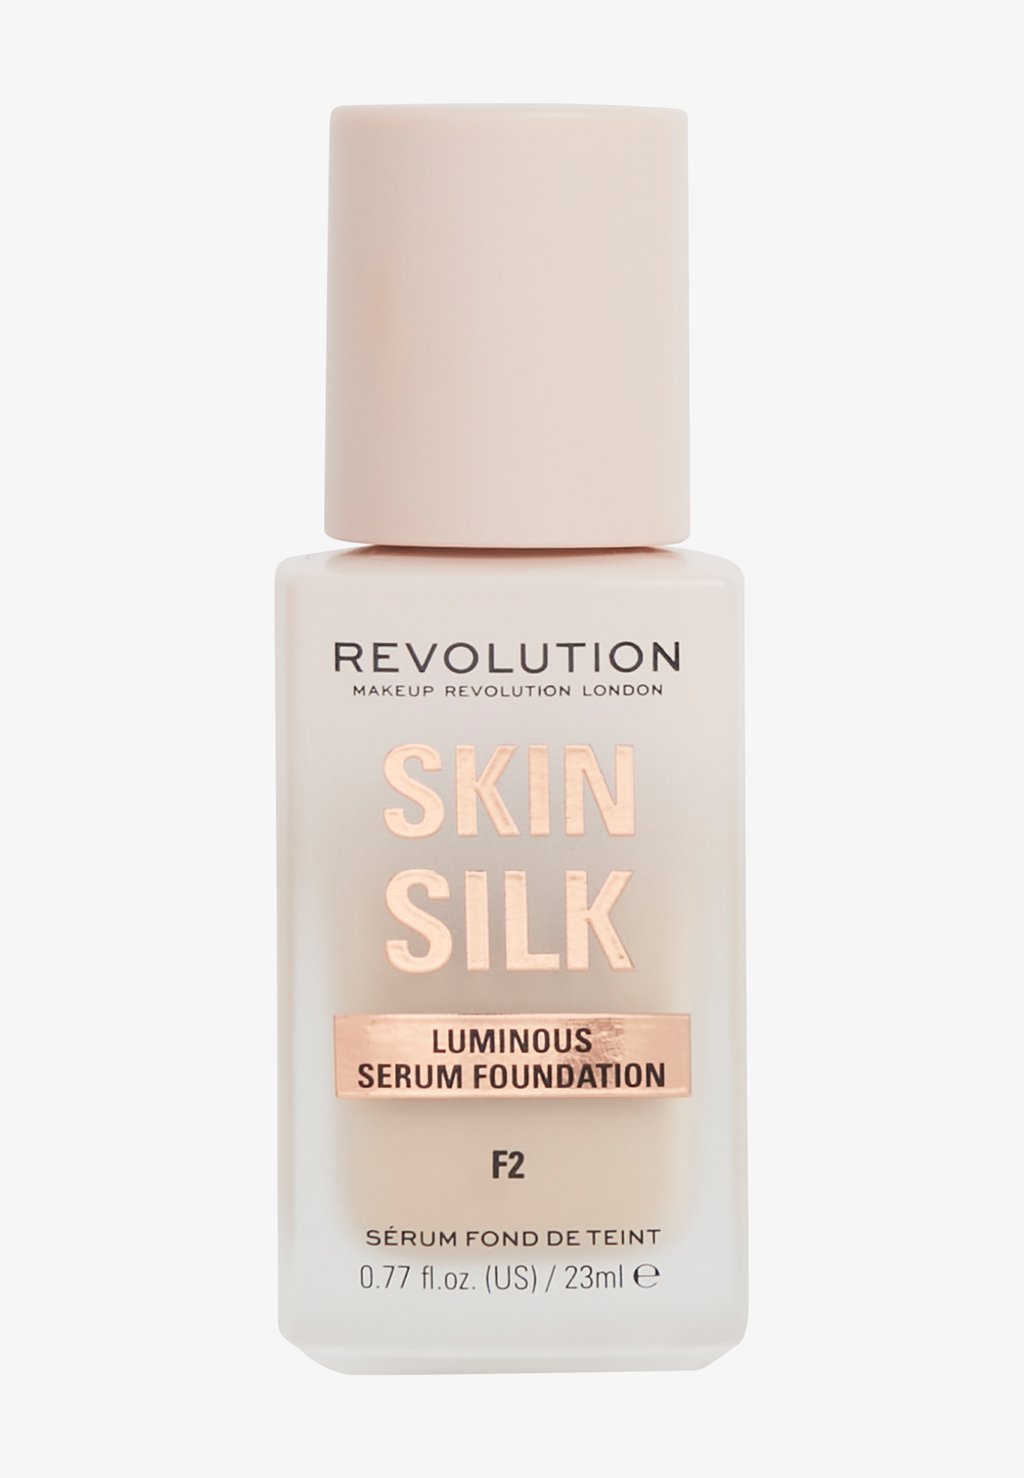 Тональный крем Revolution Skin Silk Serum Foundation Makeup Revolution, цвет f2